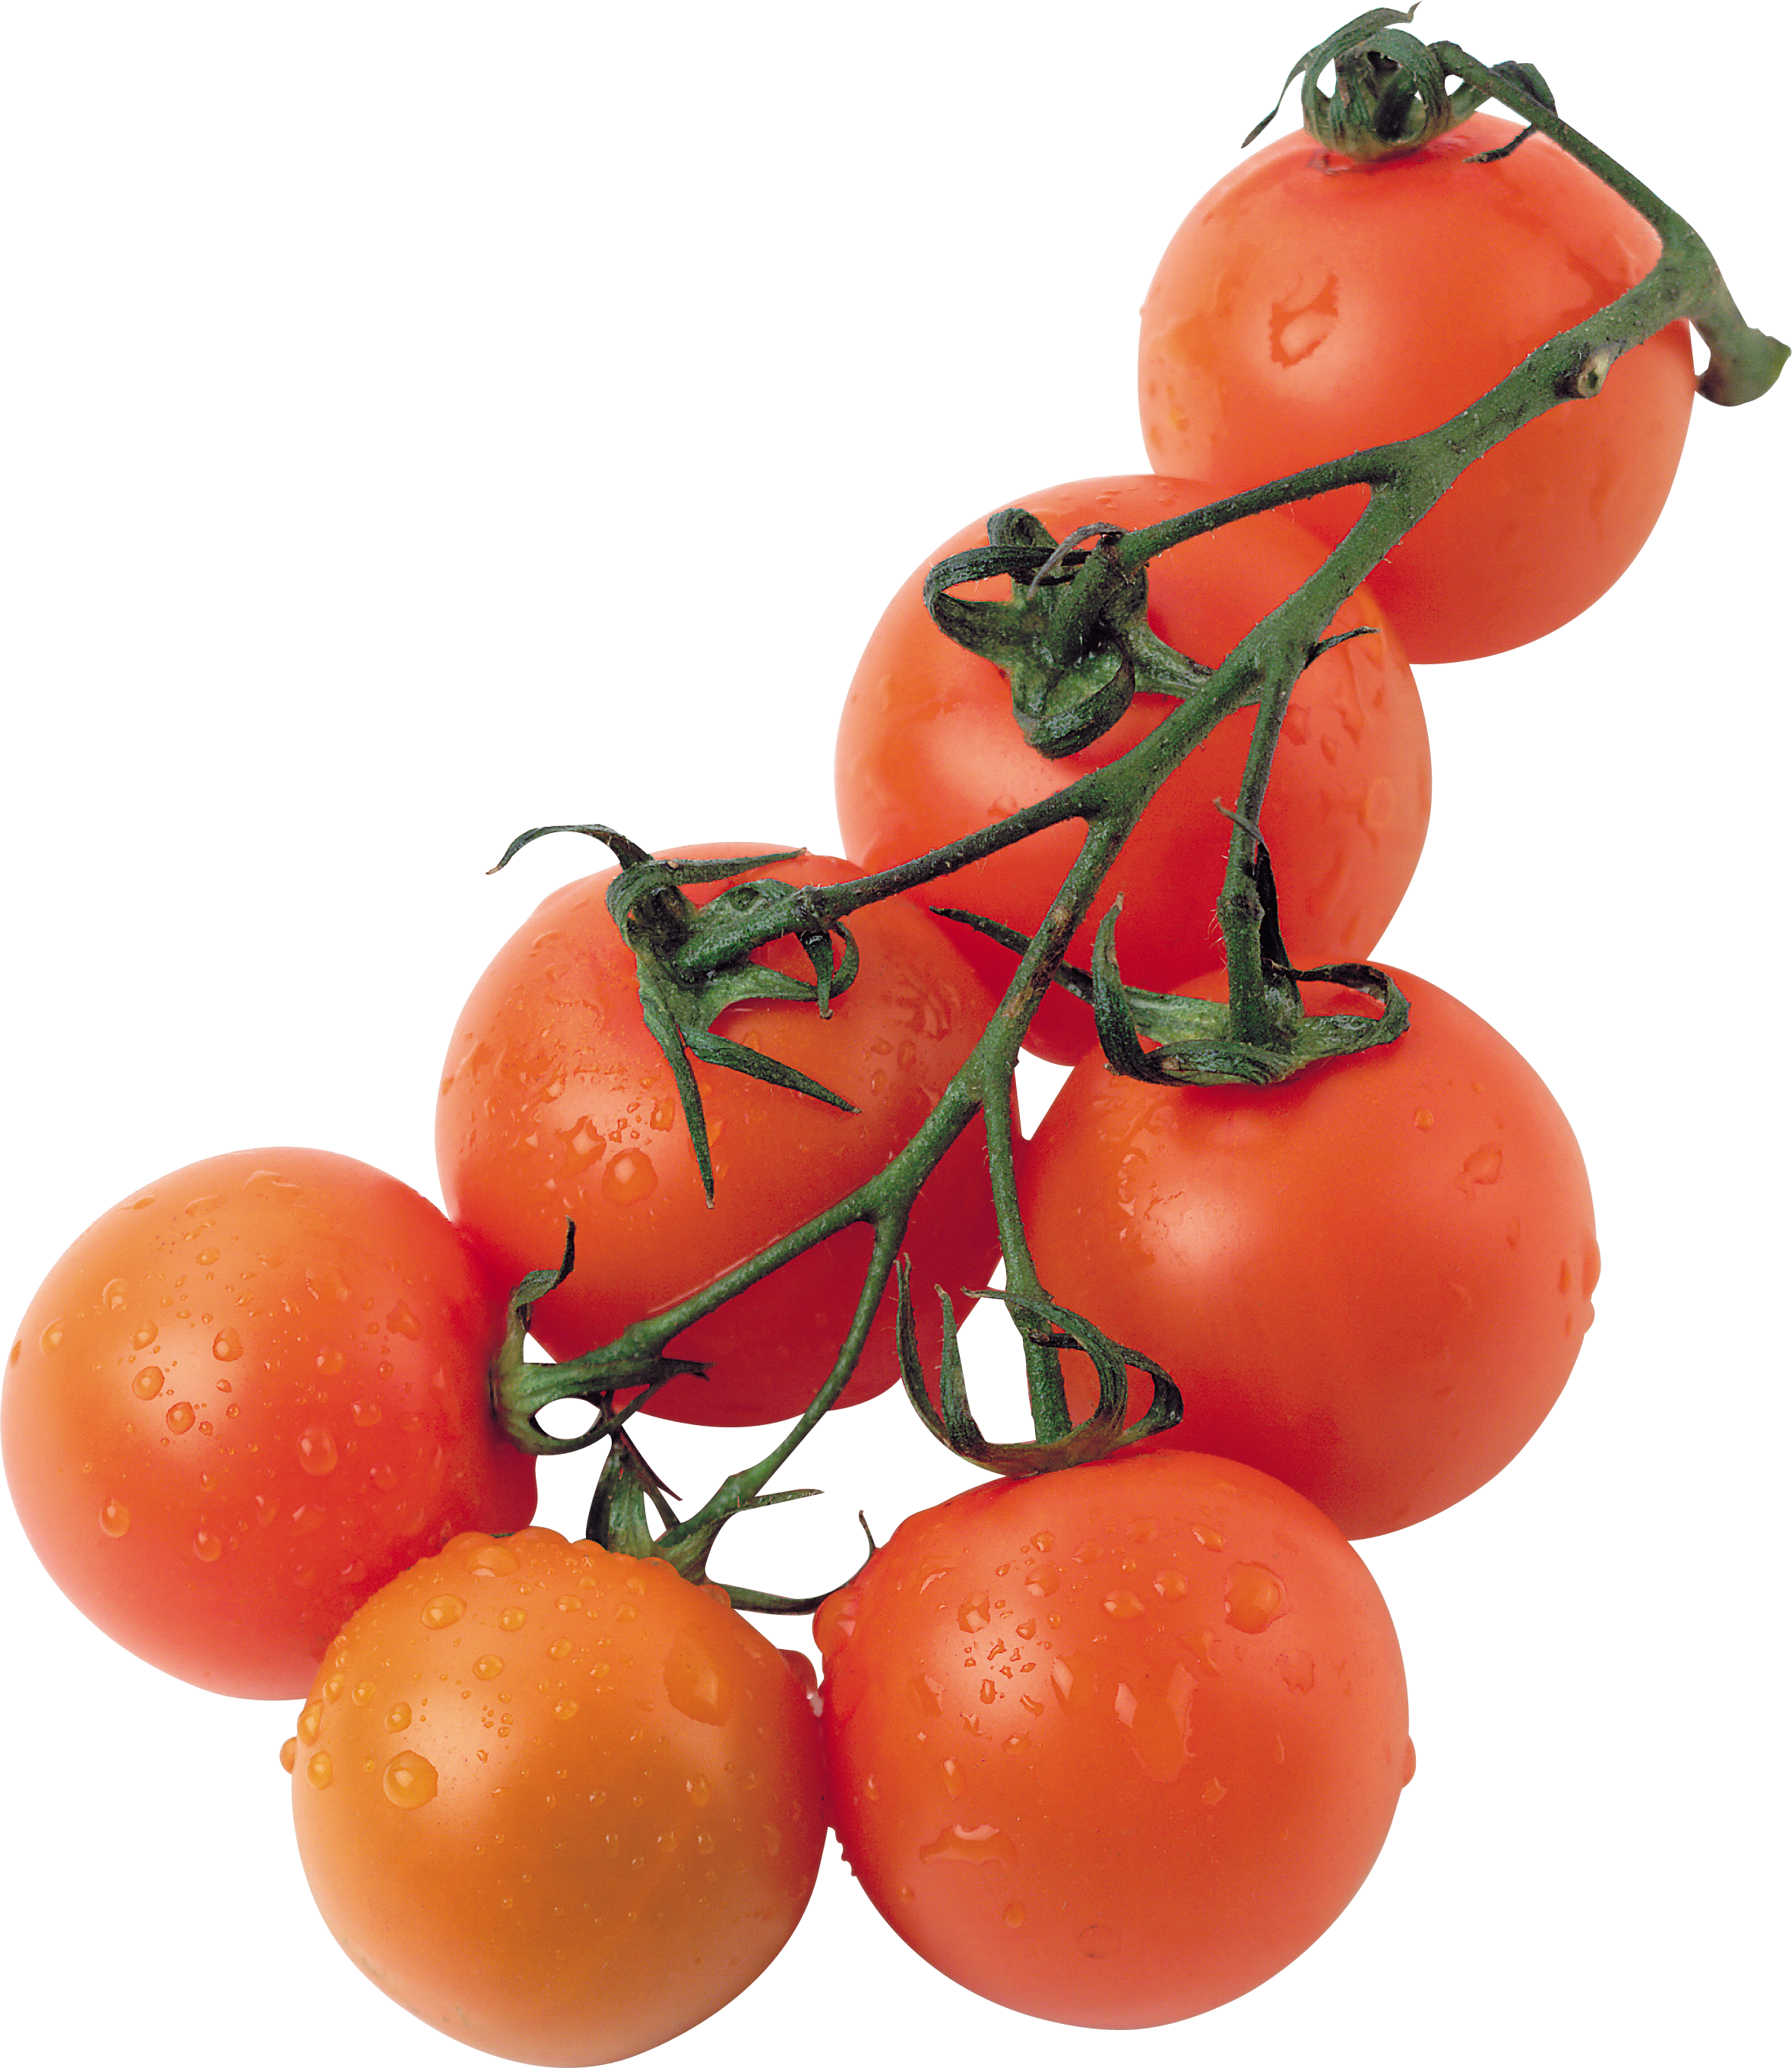 Tomat ceri (tomat kecil)